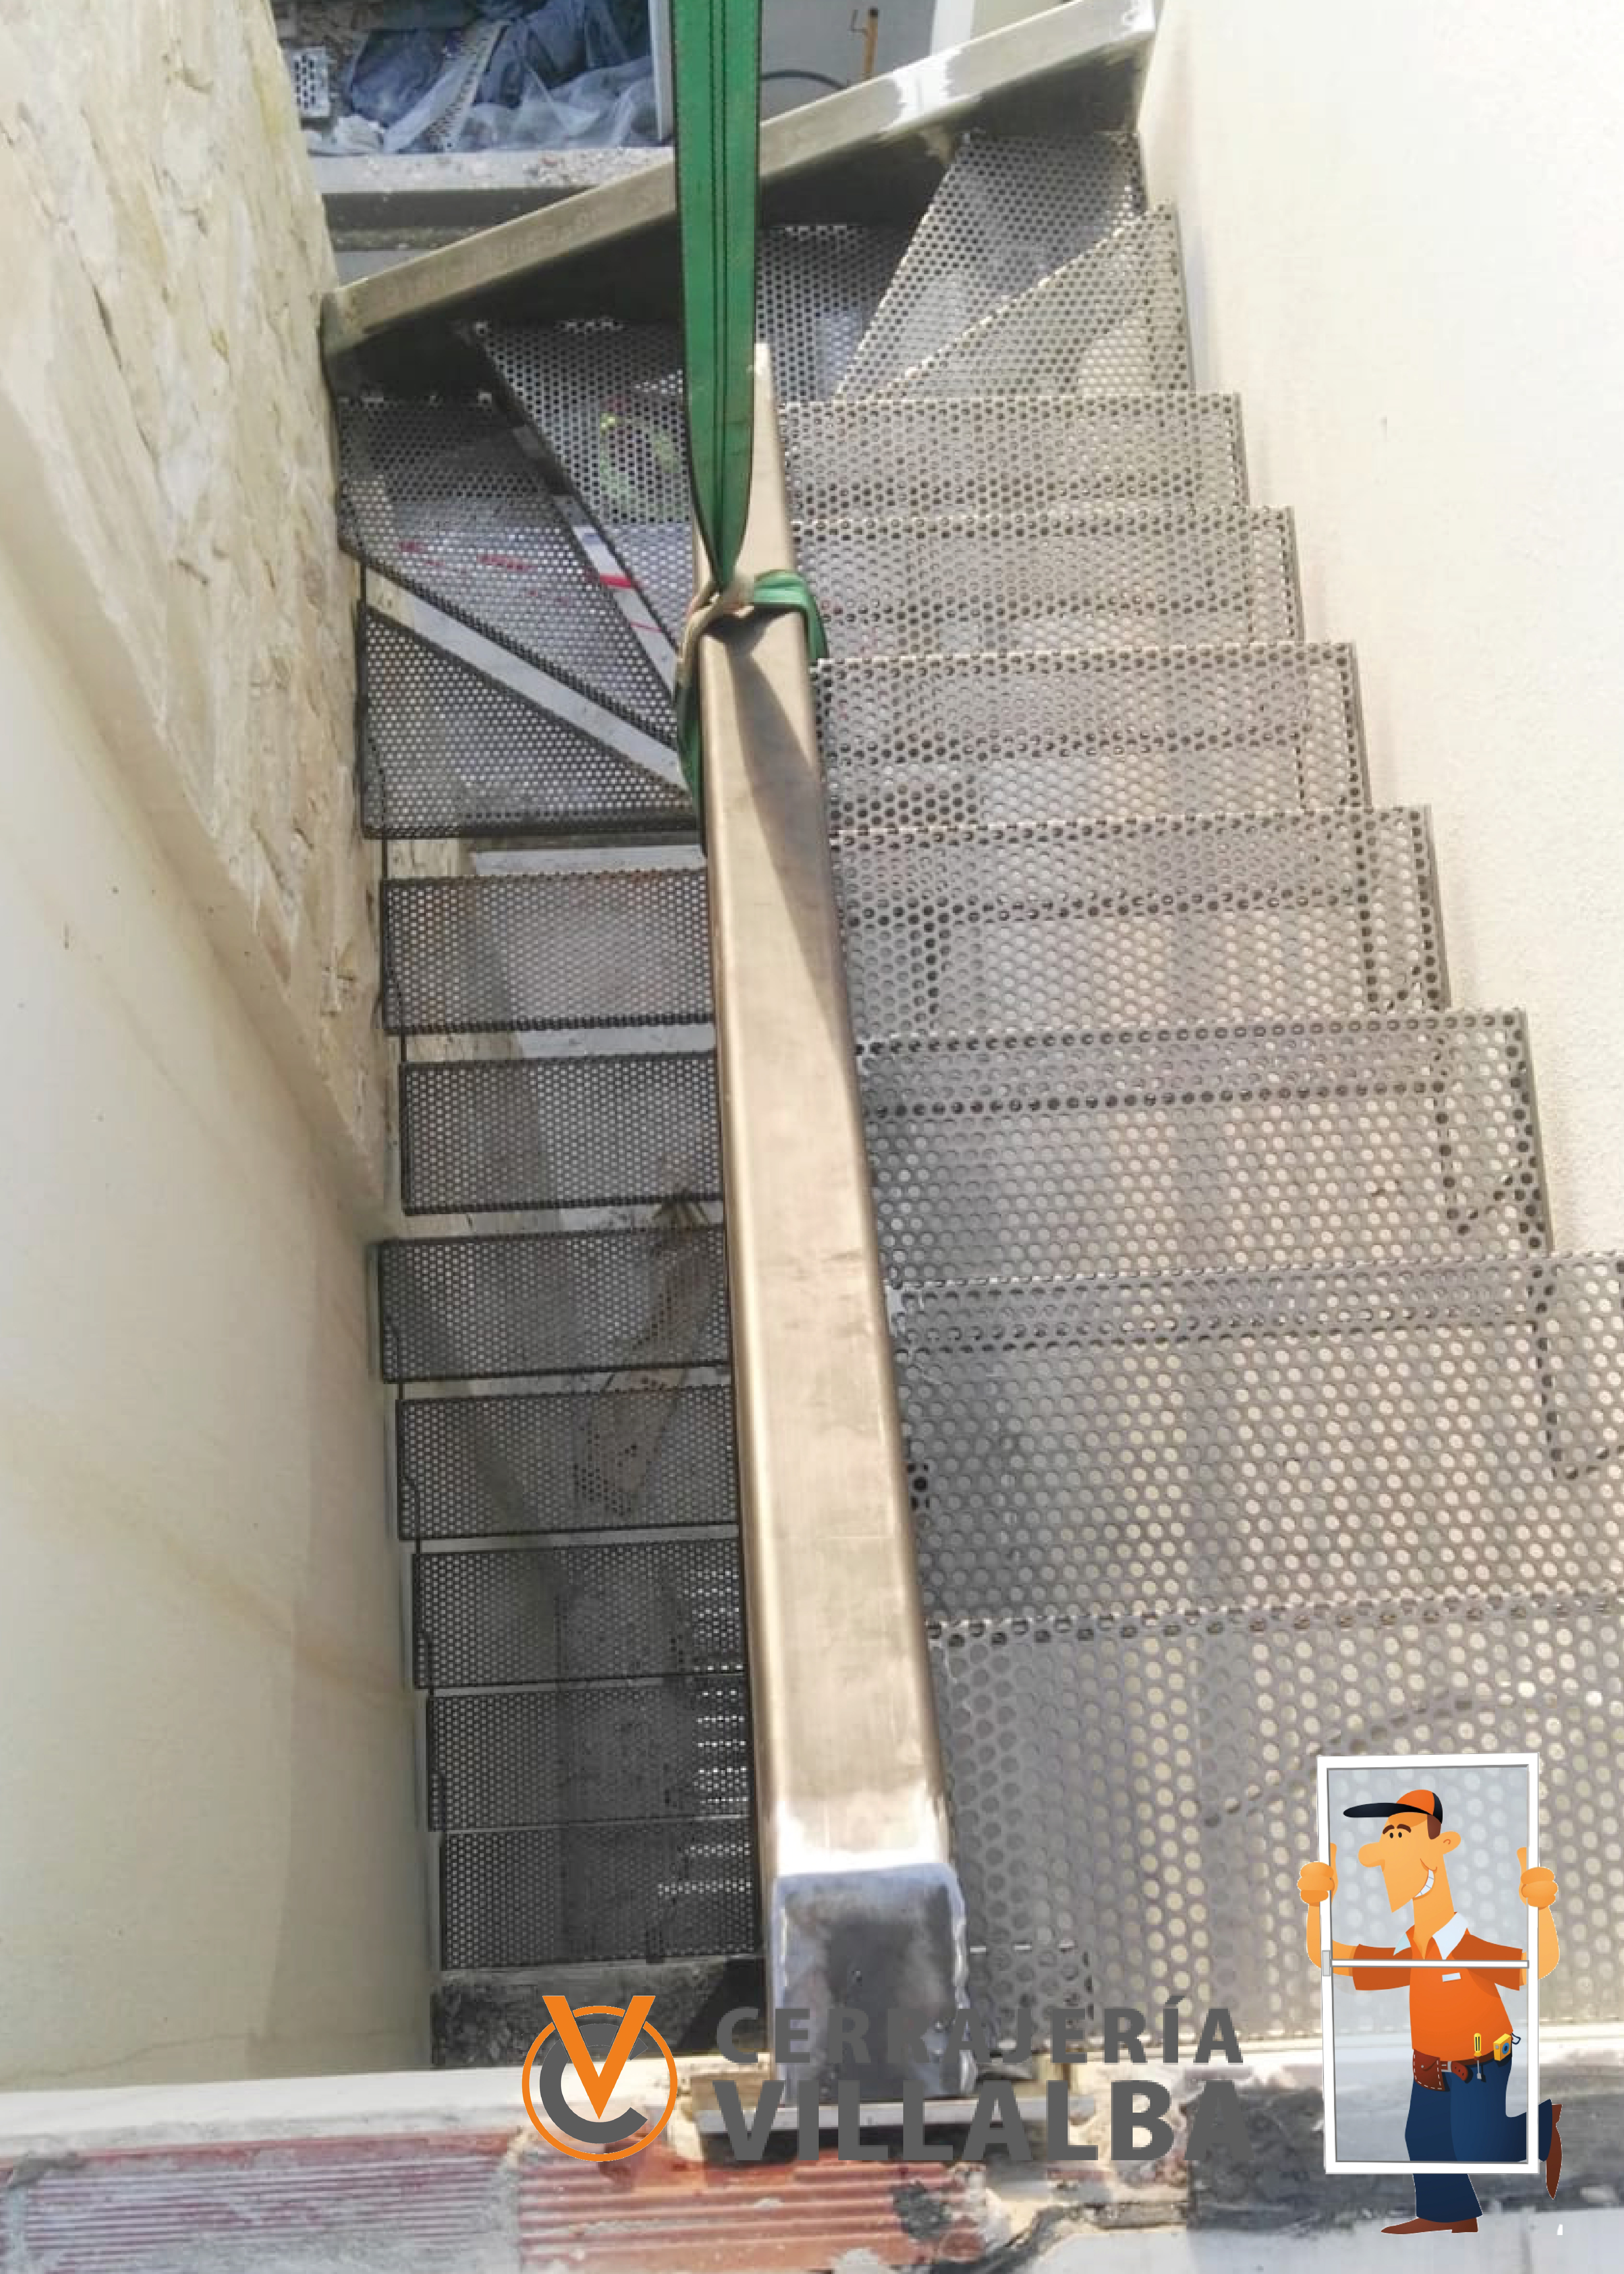 Escaleras de hierro: decoración industrial | Cerrajería Villalba Marbella